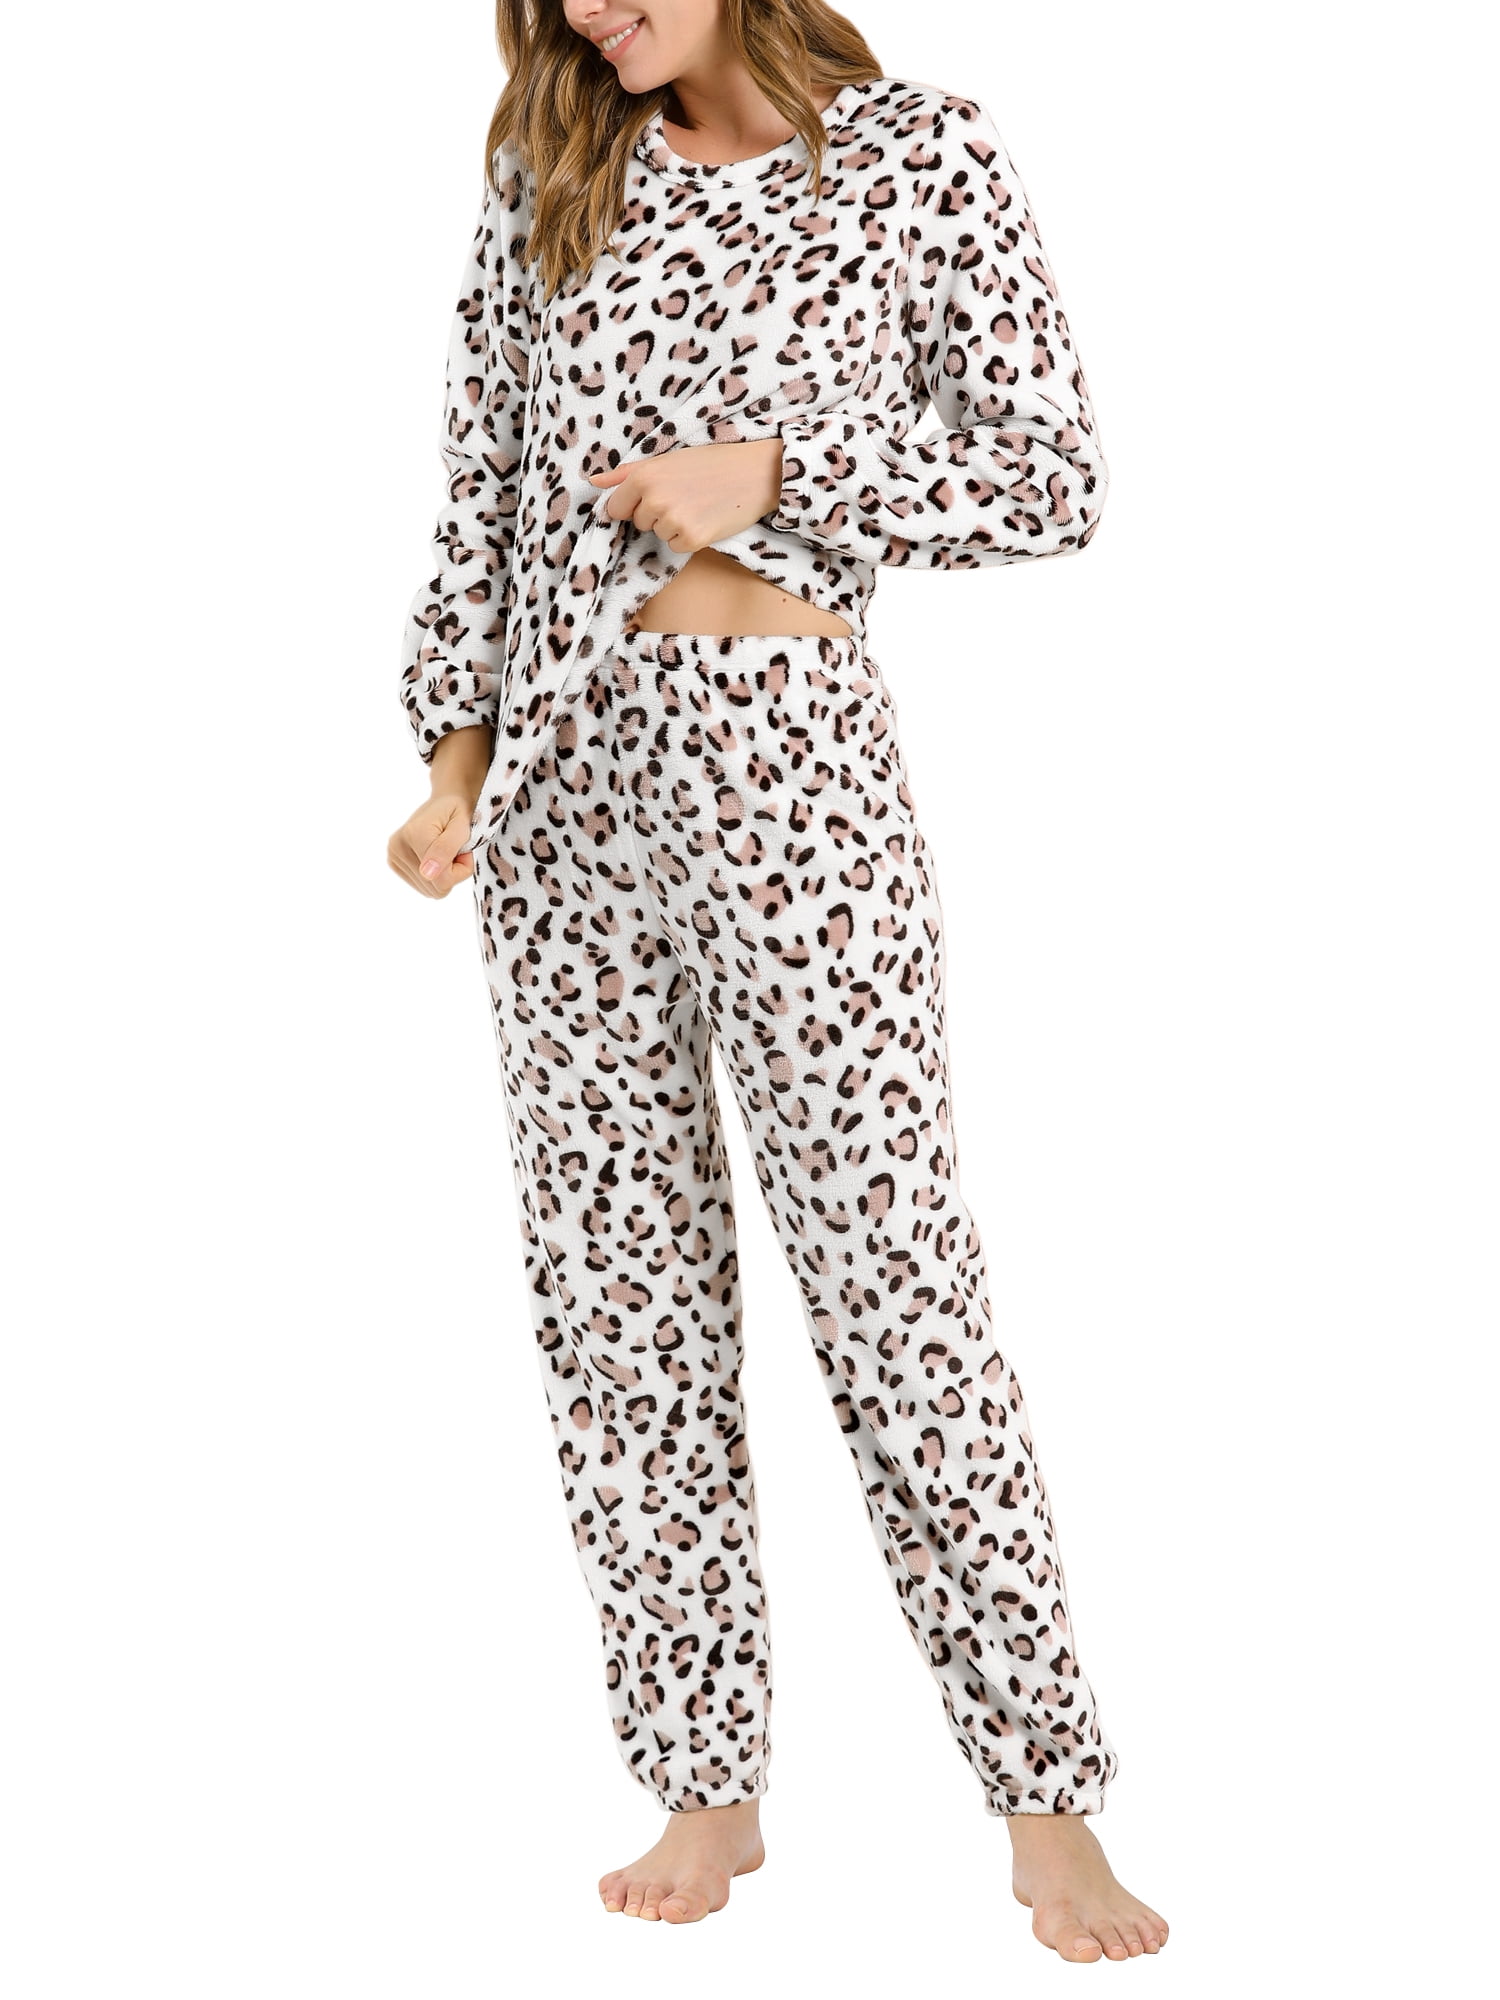 Unique Bargains Women's Winter Loungewear Sleepwear Flannel Pajama Set ...